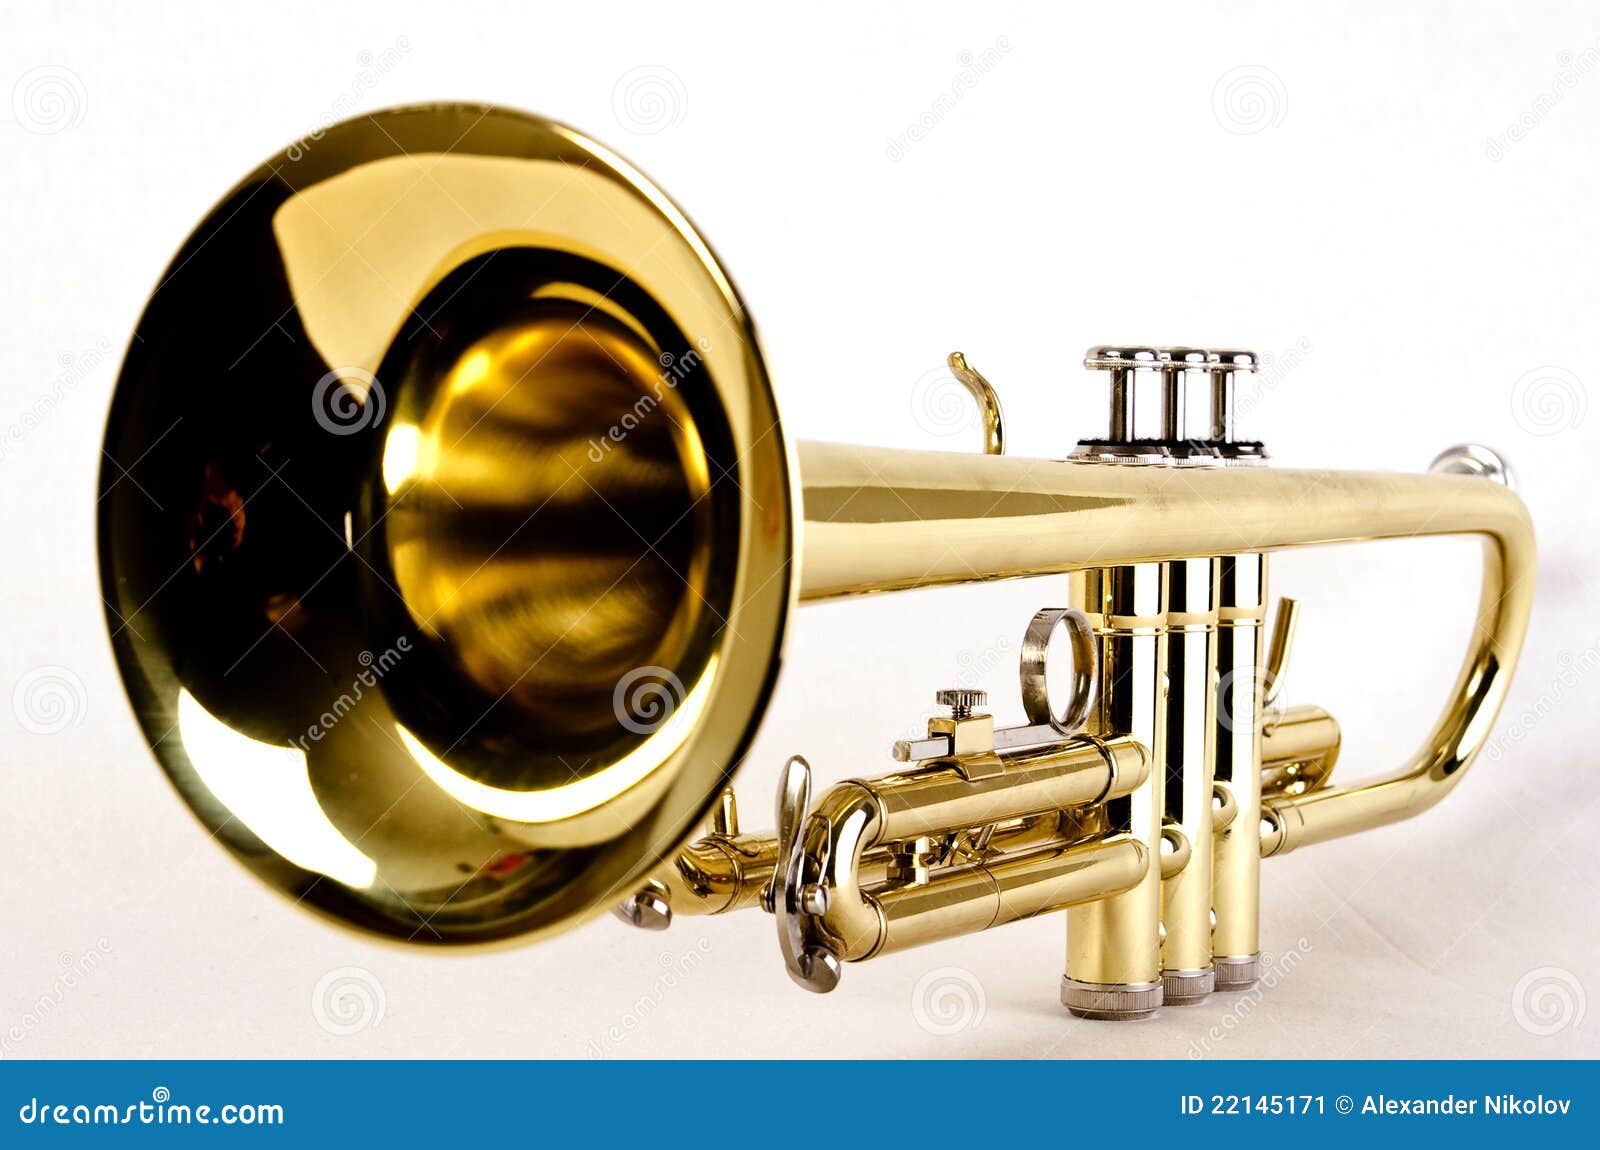 trumpet close